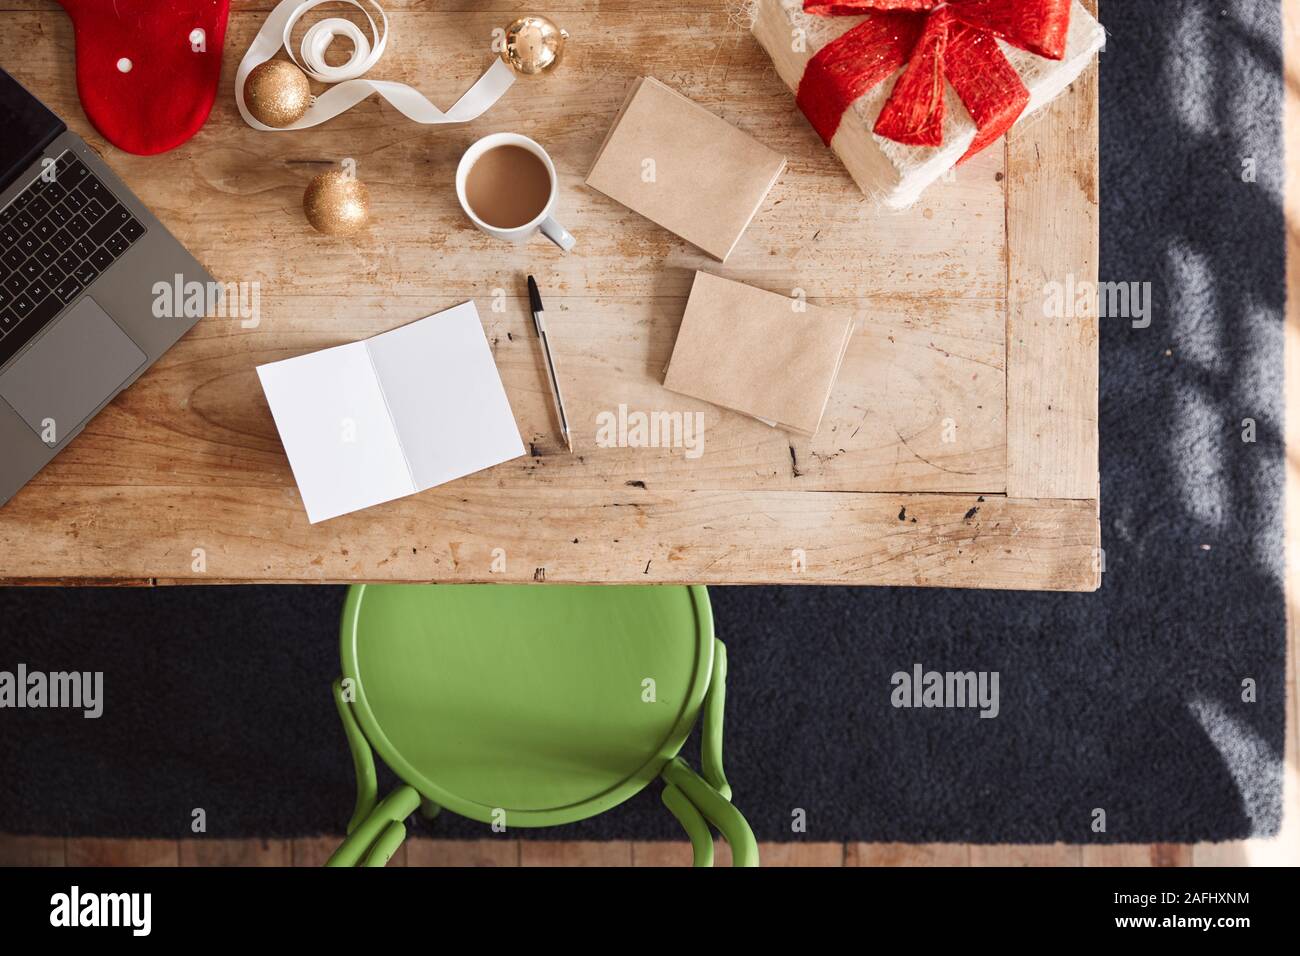 Fotografía cenital mirando a la Virgen y tarjetas de Navidad regalos envueltos desgaste en la tabla Foto de stock